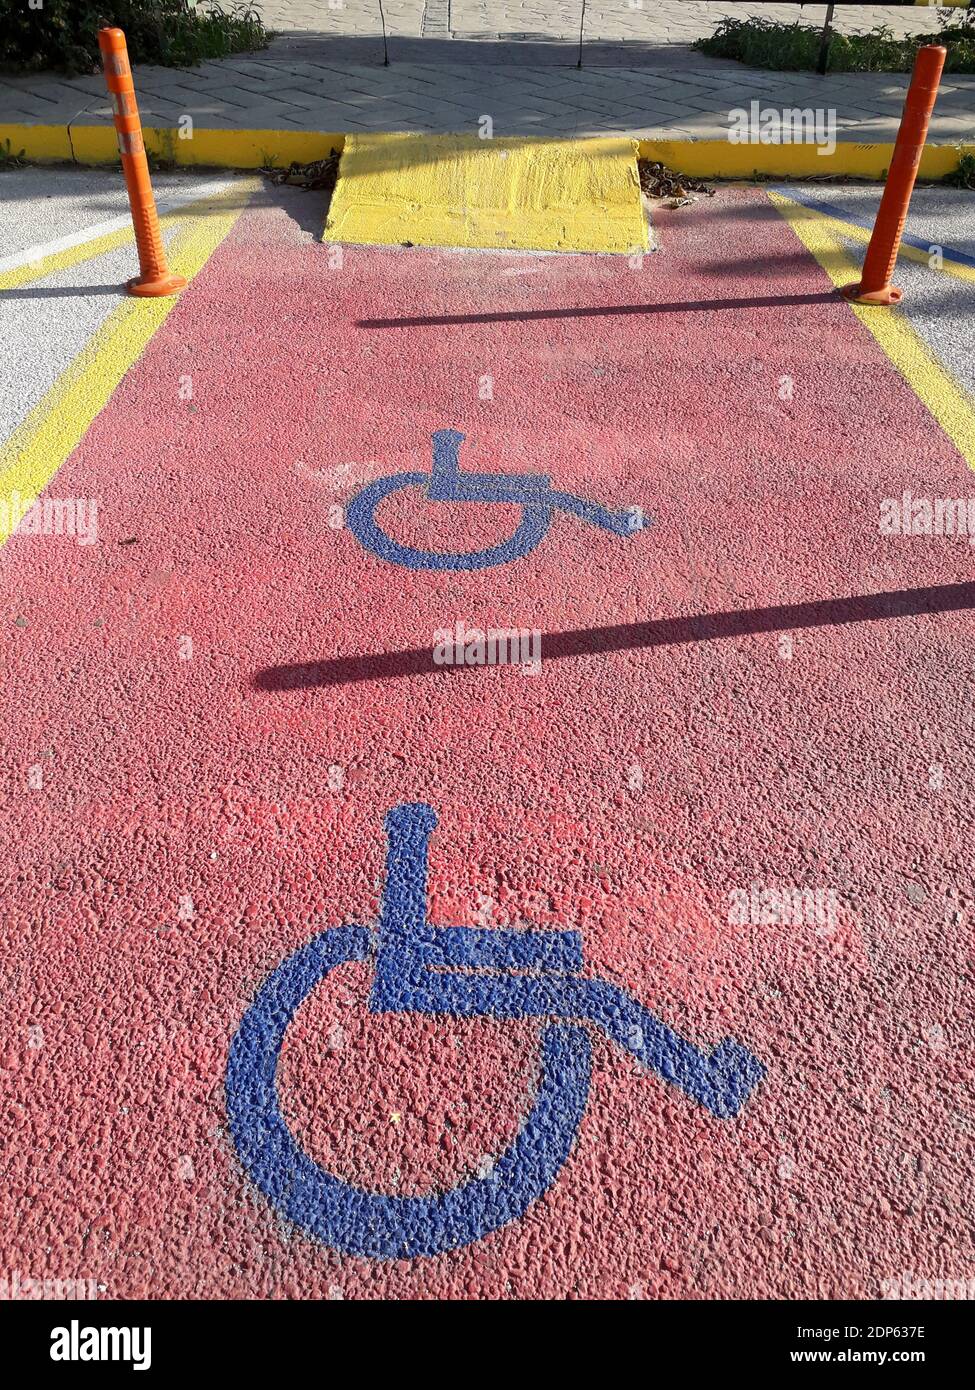 Panneau jaune pour personnes handicapées marquant une place dans un parking, sur fond rouge dans une marina en Grèce Banque D'Images